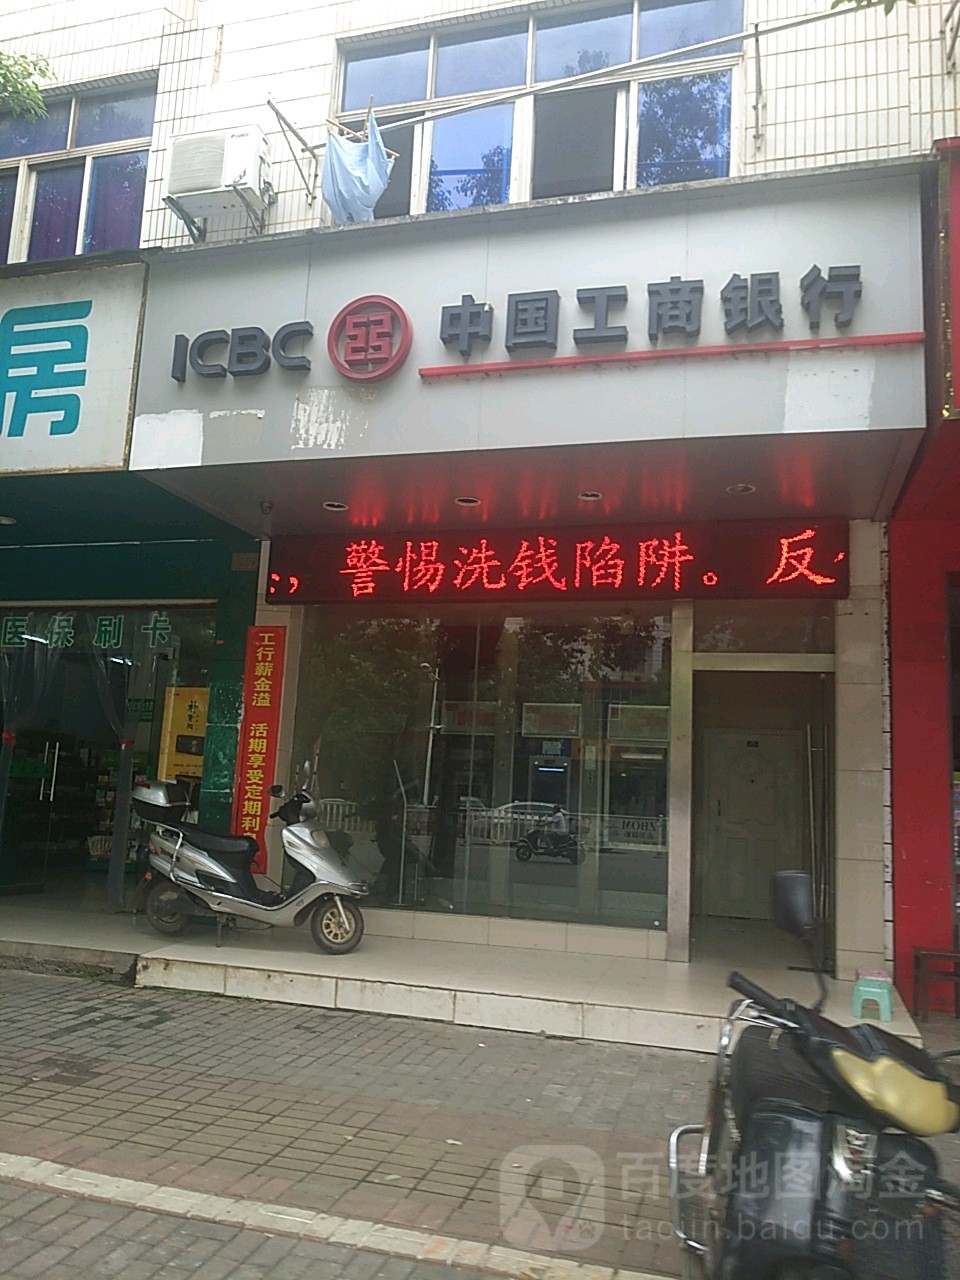 中國工商銀行24小時自助銀行(東鄉支行恒安西路24小時服務)